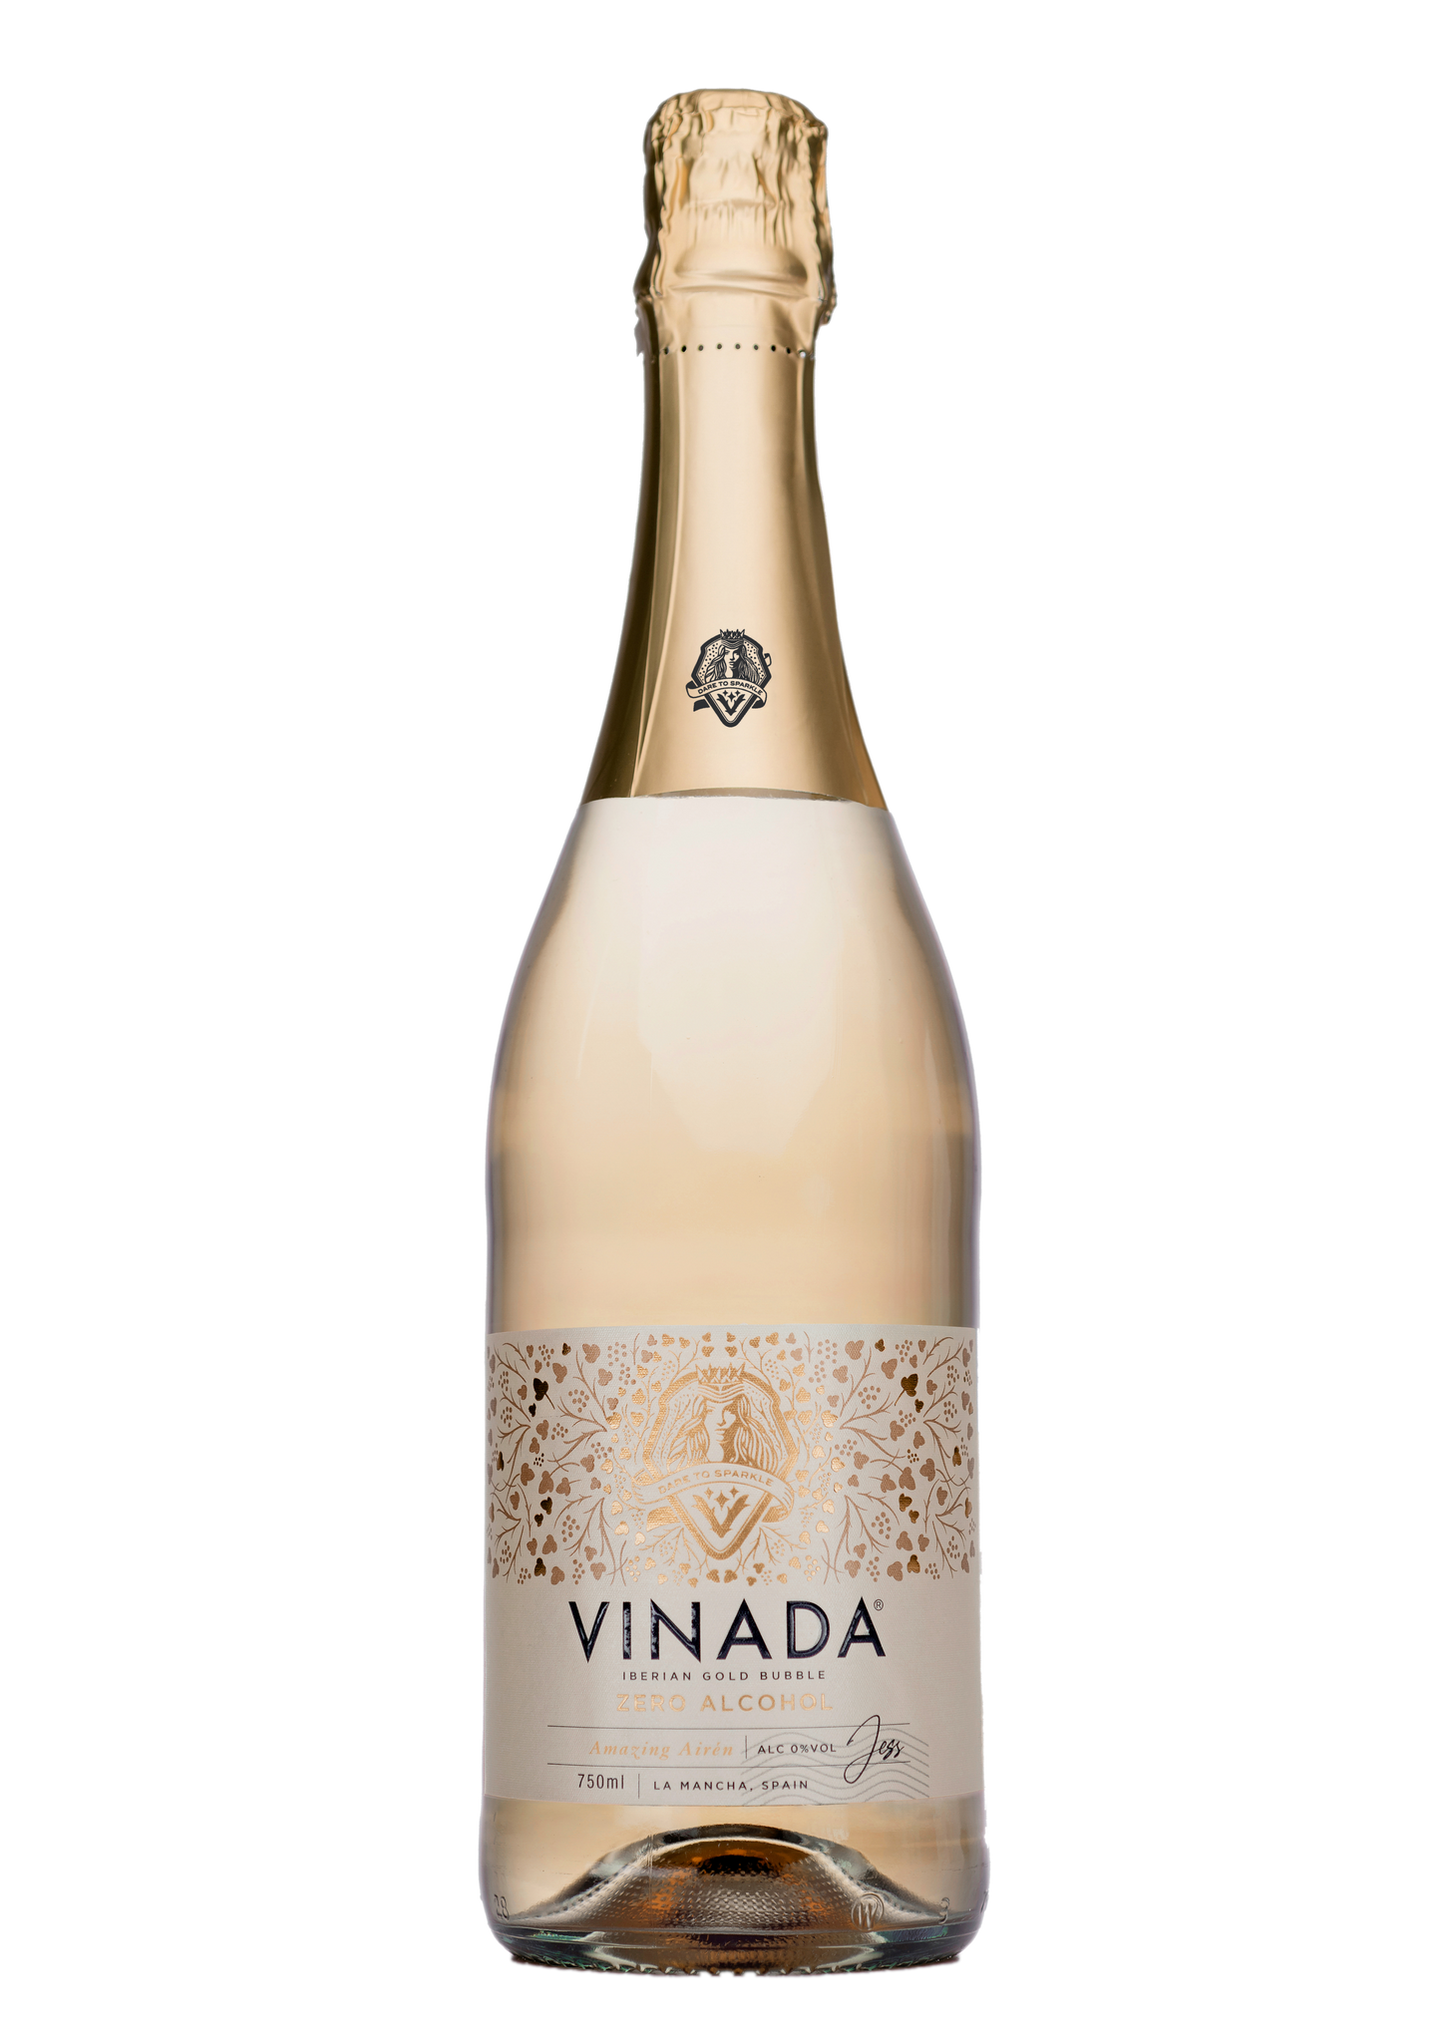 Vinada - Iberian Gold Bubble Airen